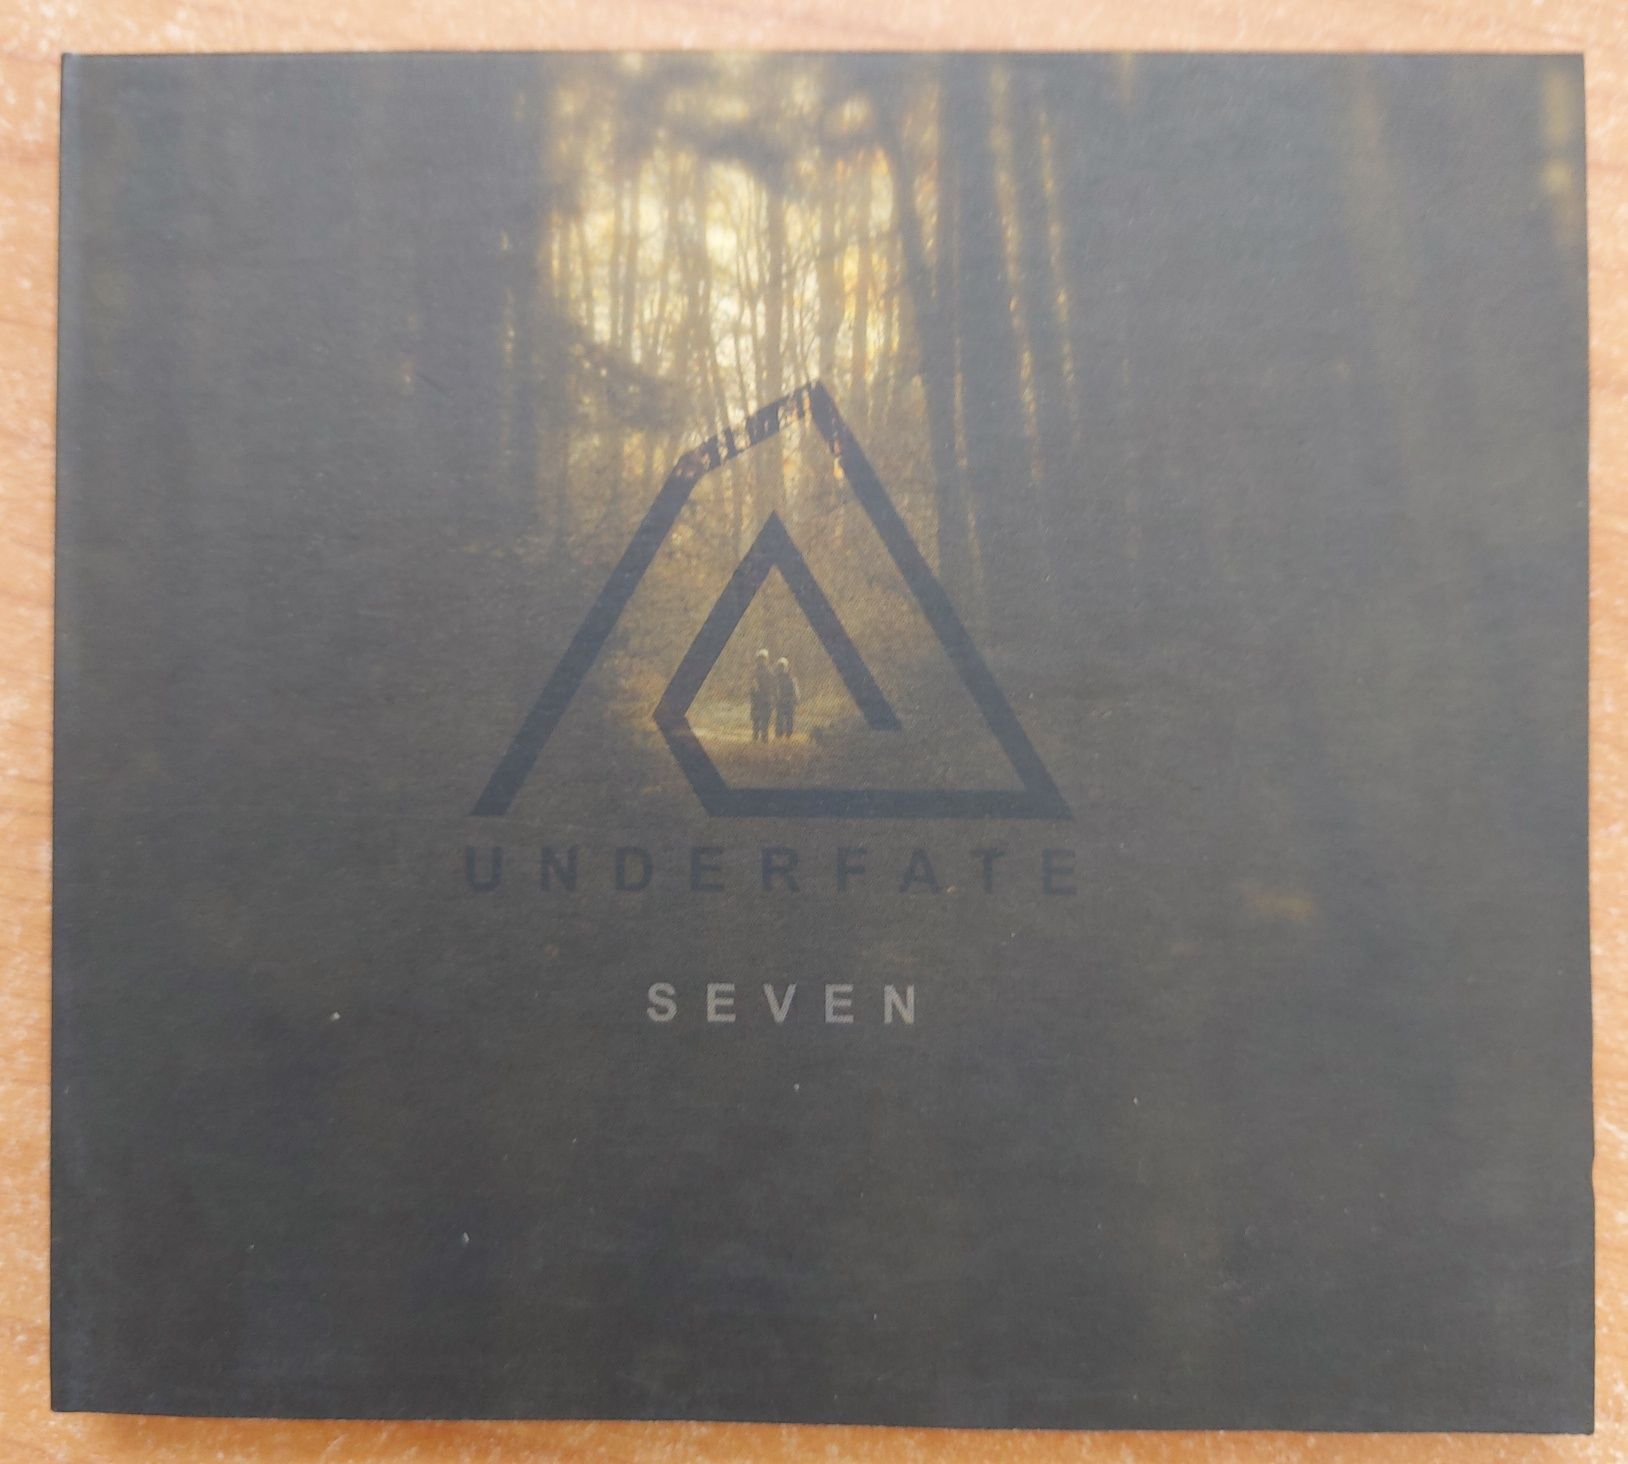 Underfate - płyta CD "Seven", przesyłka w cenie